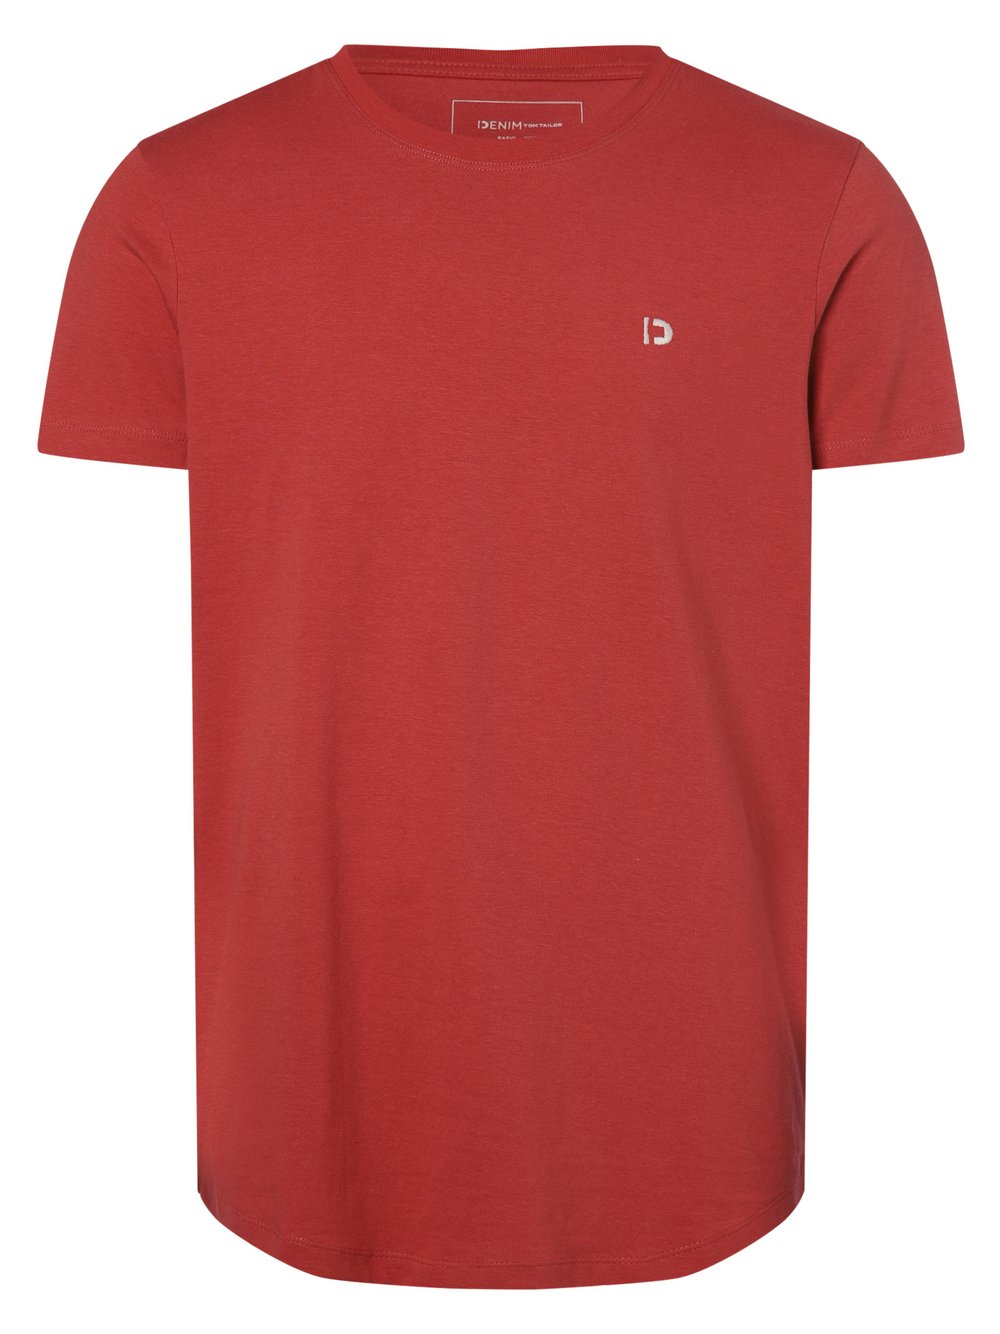 Tom Tailor Denim - T-shirt męski, czerwony|różowy